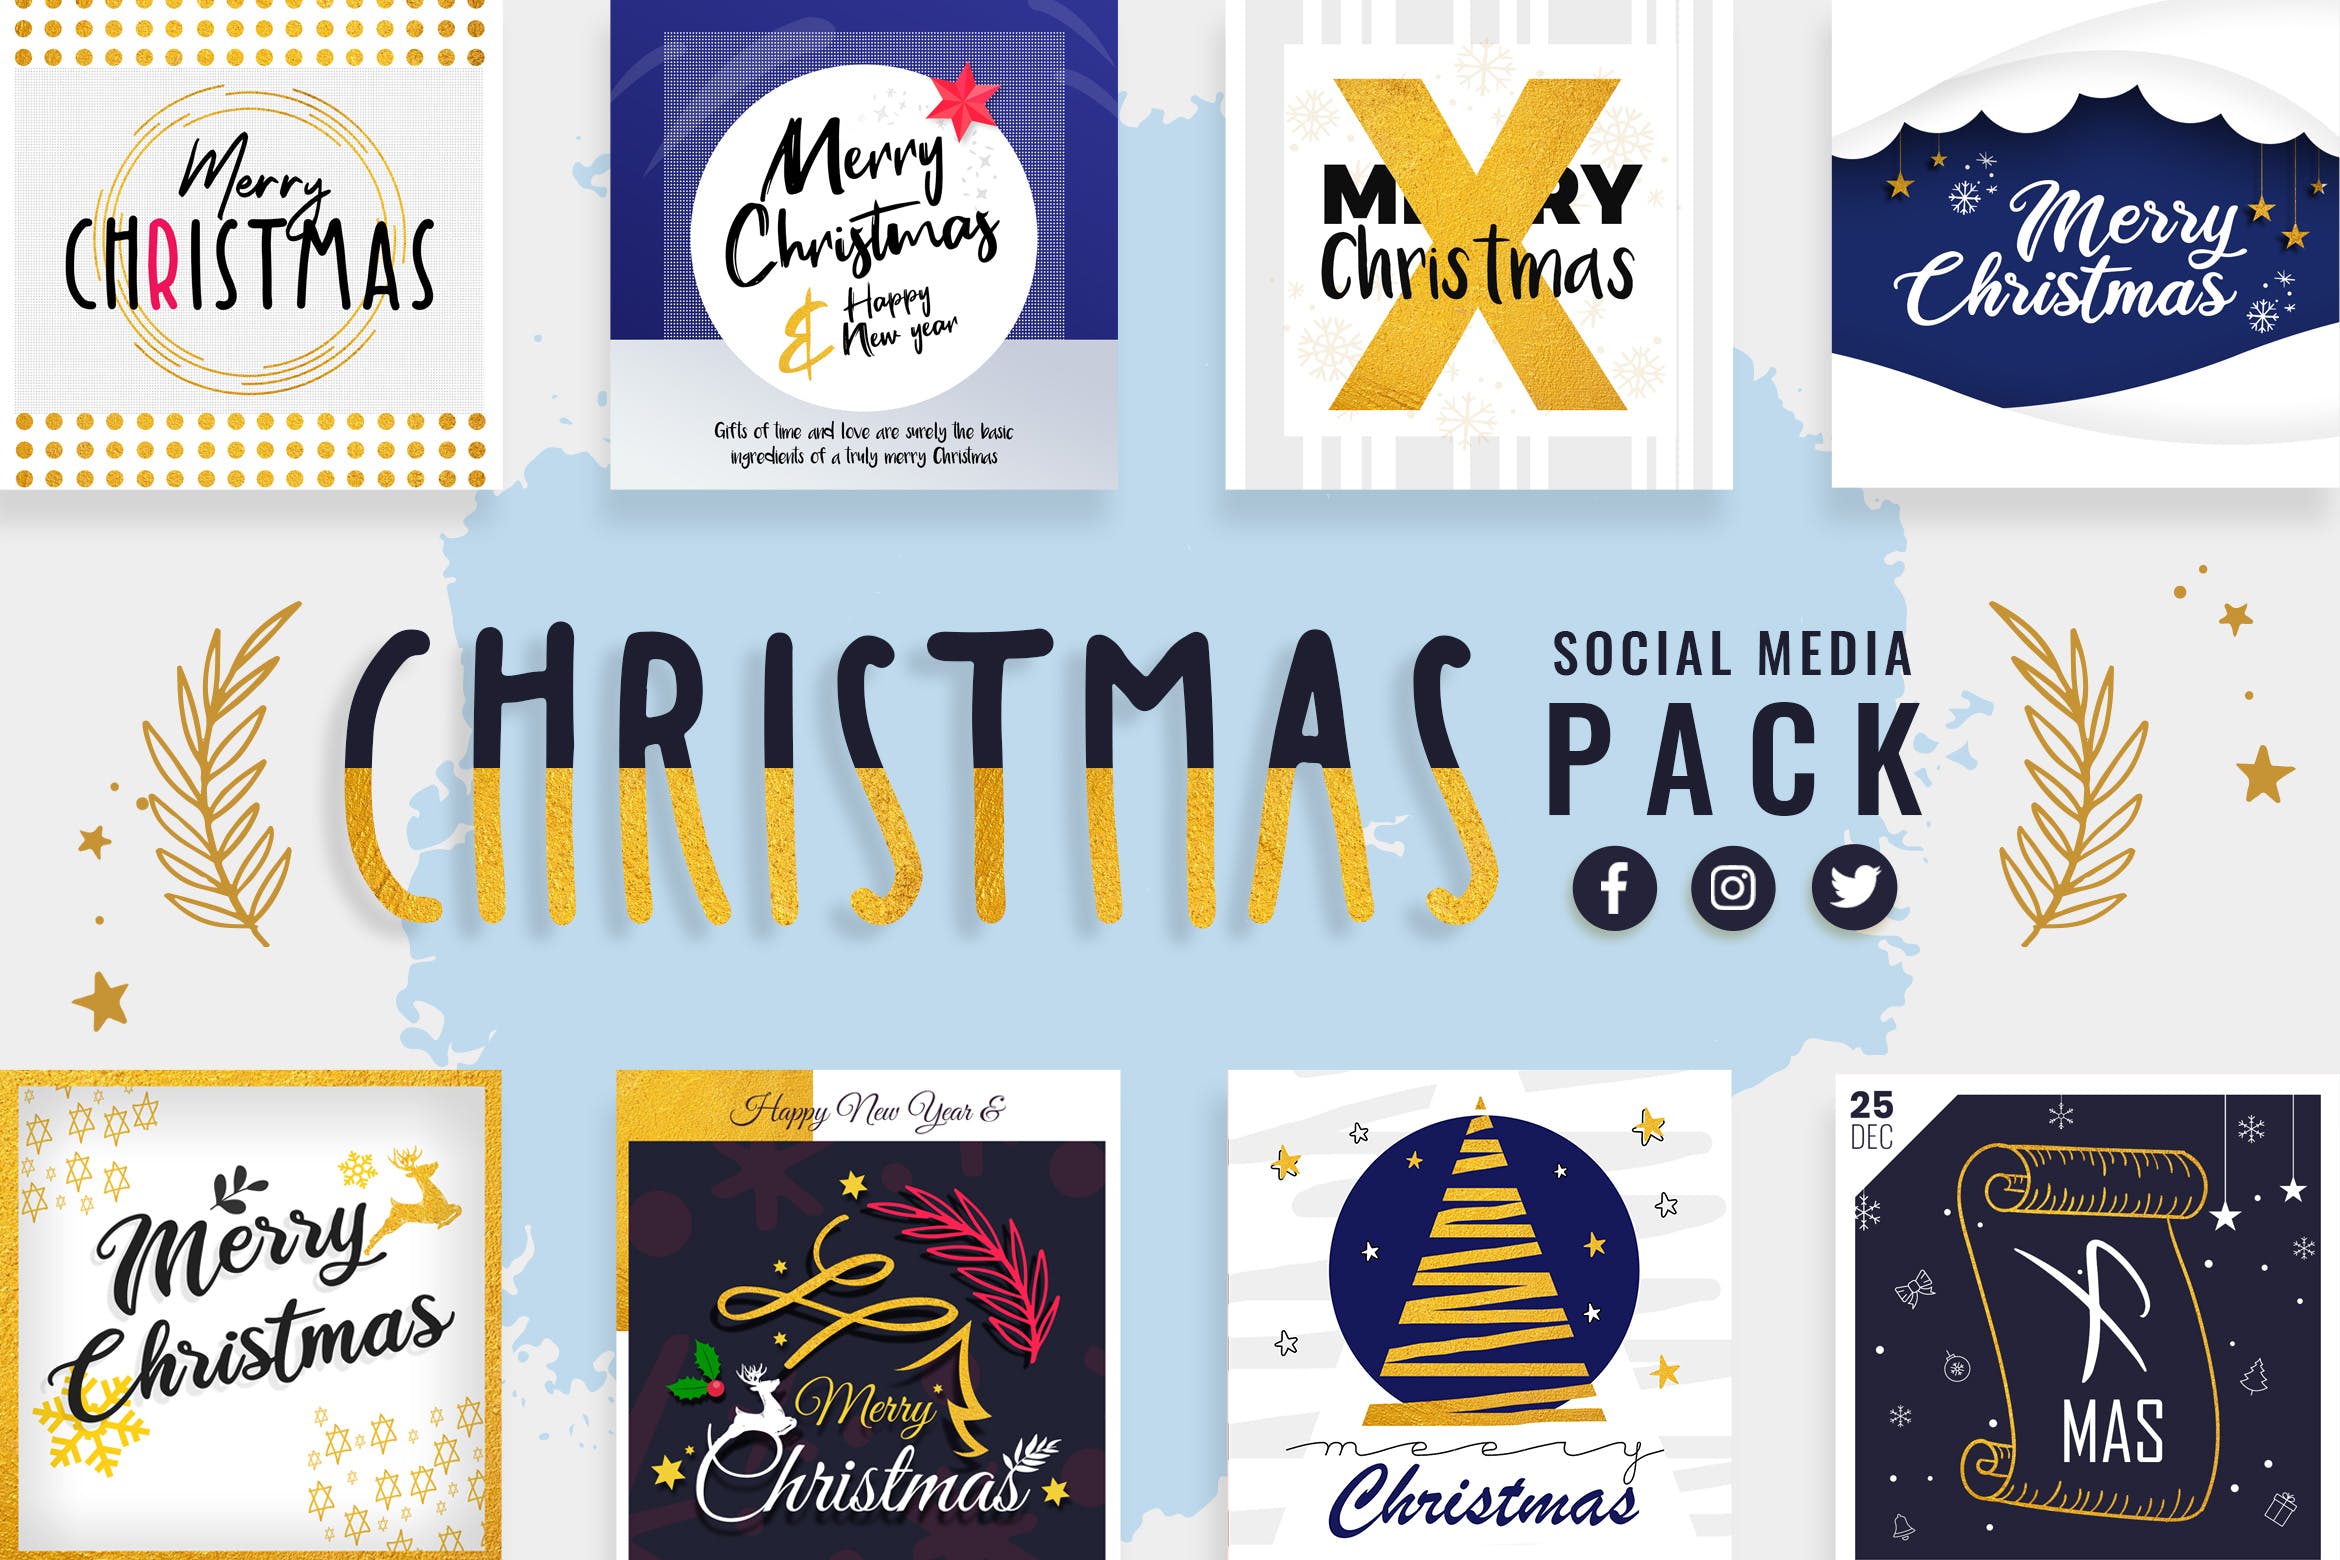 社交媒体自媒体圣诞节祝语贴图设计模板素材库精选 Christmas Social Media Templates插图